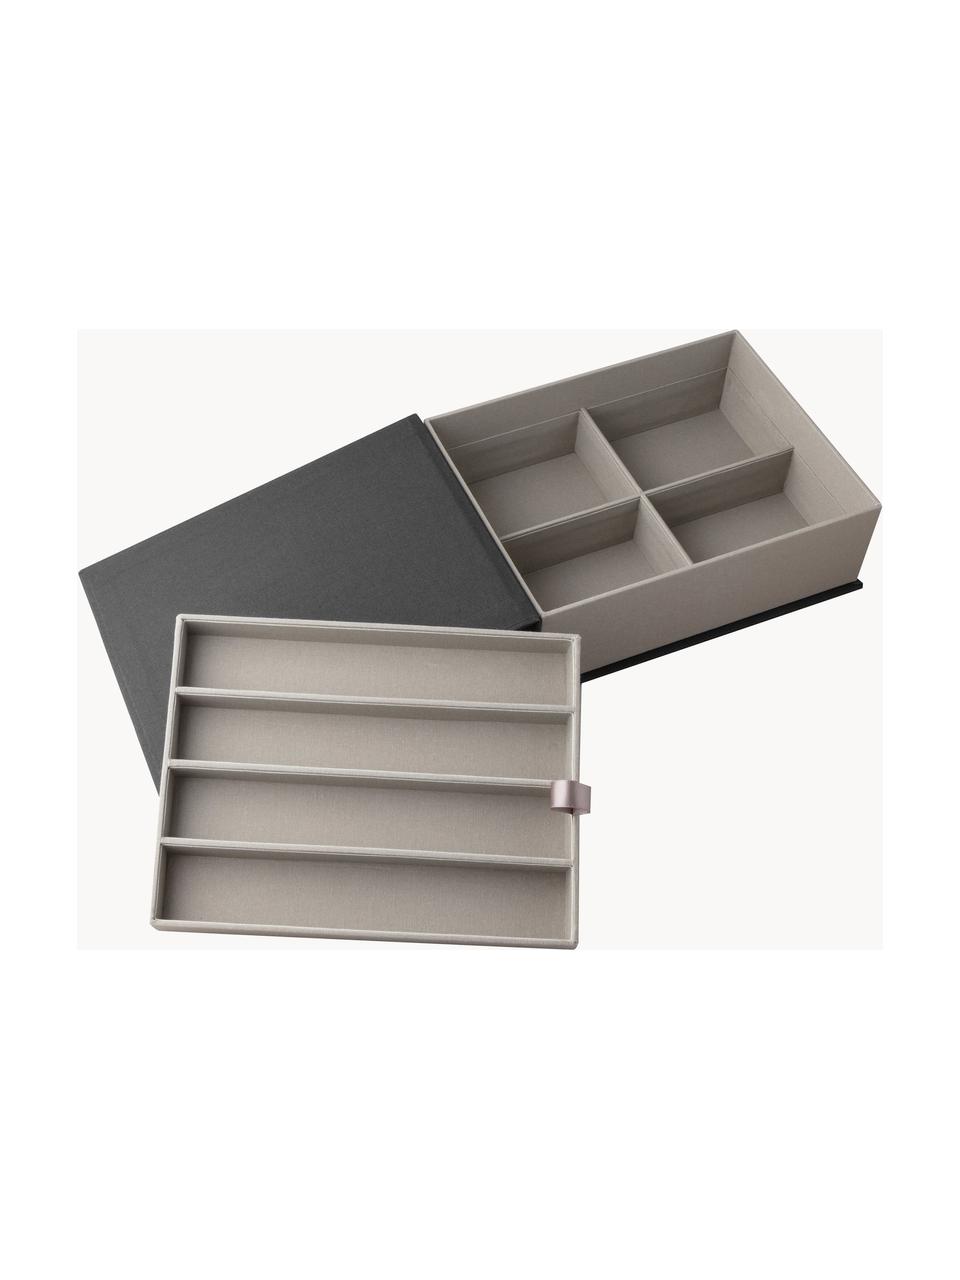 Skladovací krabička Small Things, 80 % šedý karton, 18 % polyester, 2 % bavlna, Černá, Š 23 cm, V 18 cm